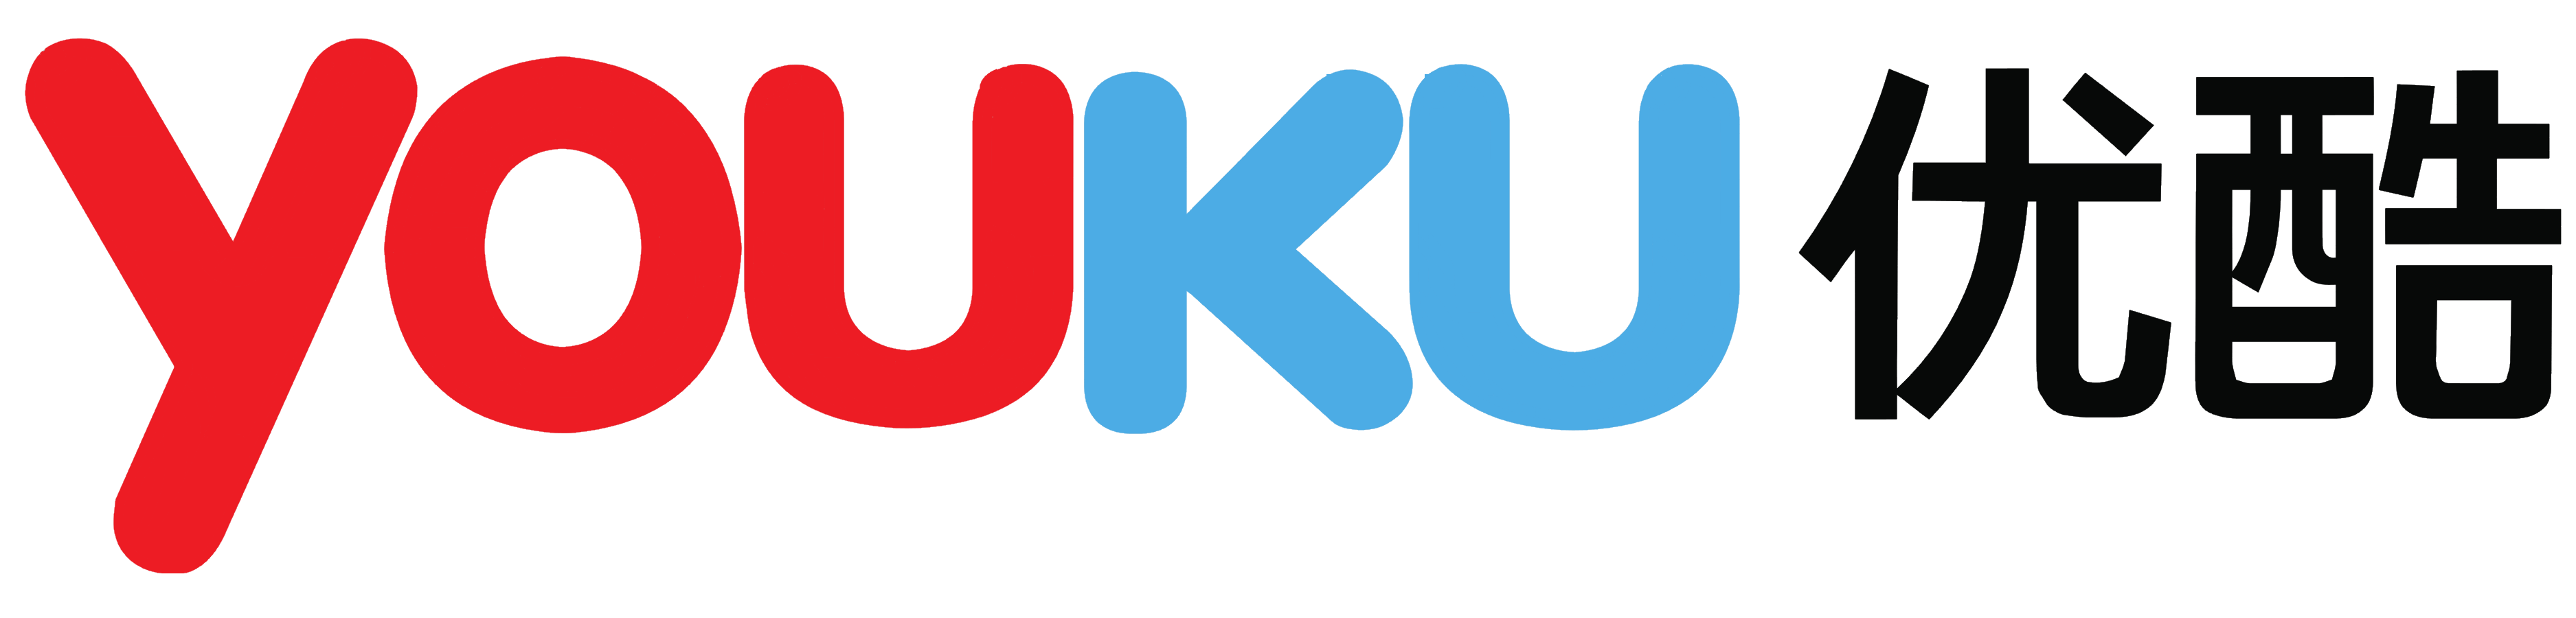 Youku logo vector .